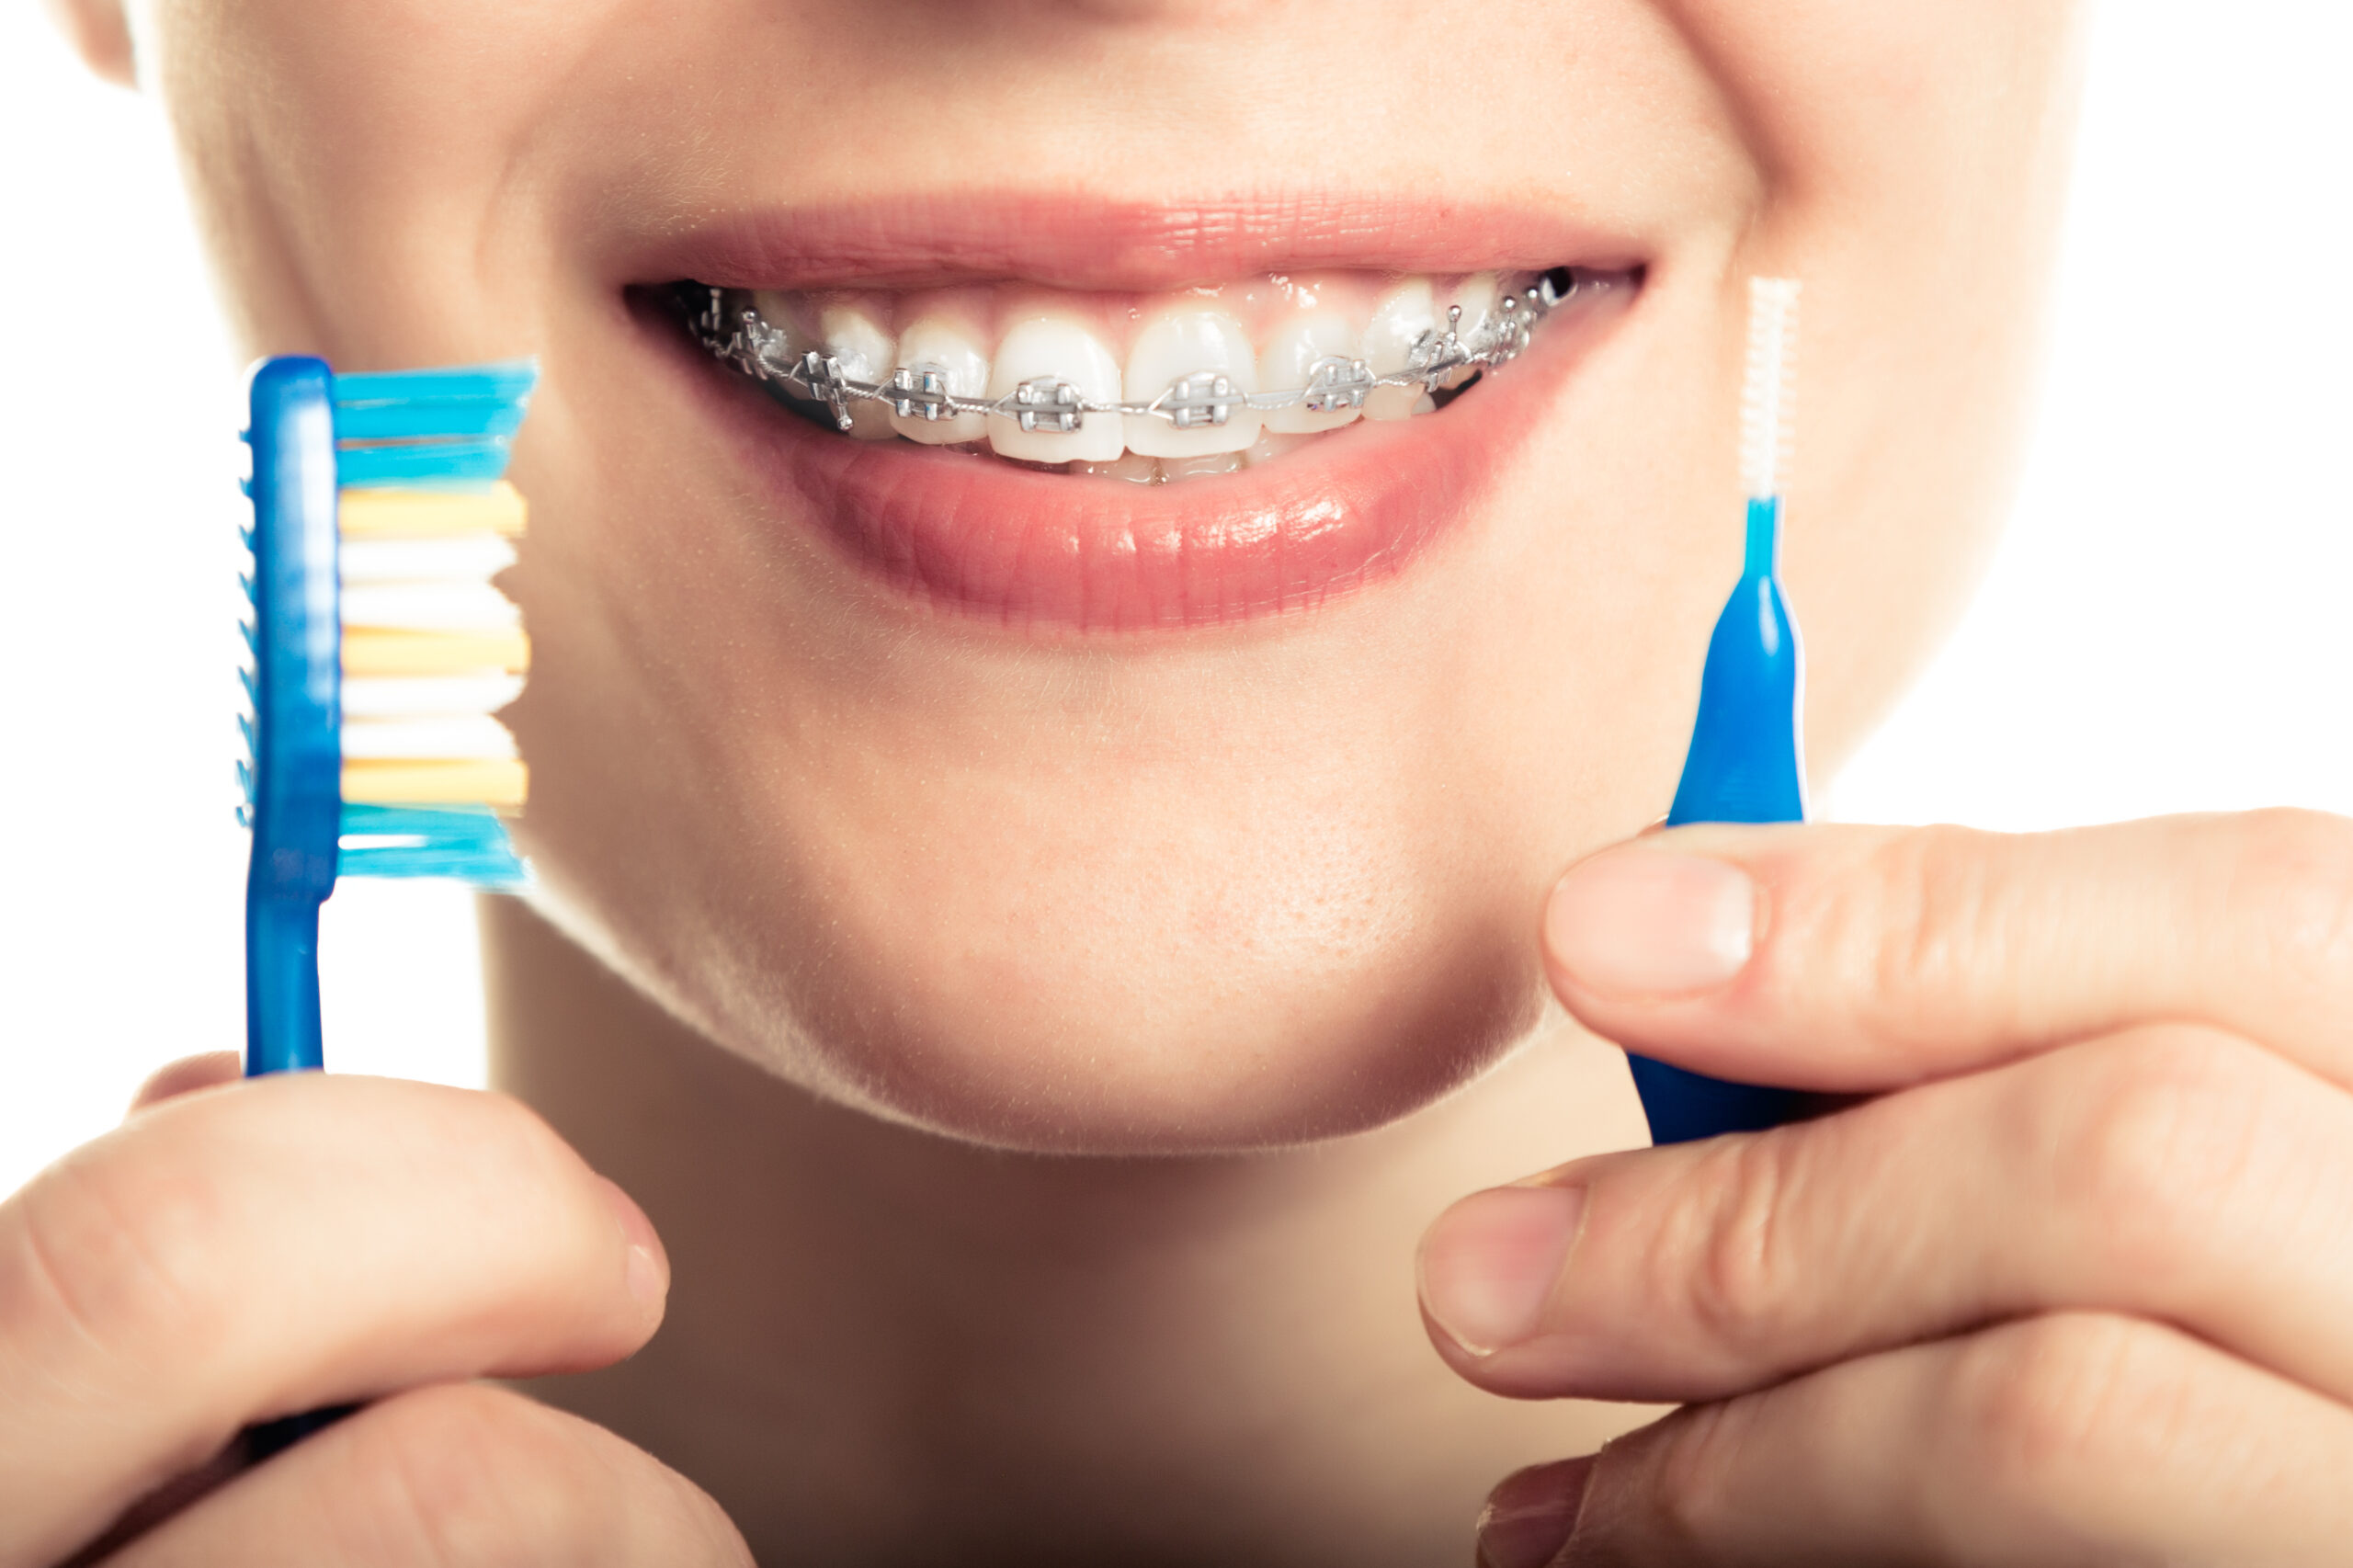 Do your teeth. Гигиена полости рта с брекет системой. Ортодонтическая щетка для брекетов. Гигиена полости рта с брекетами в стоматологии.